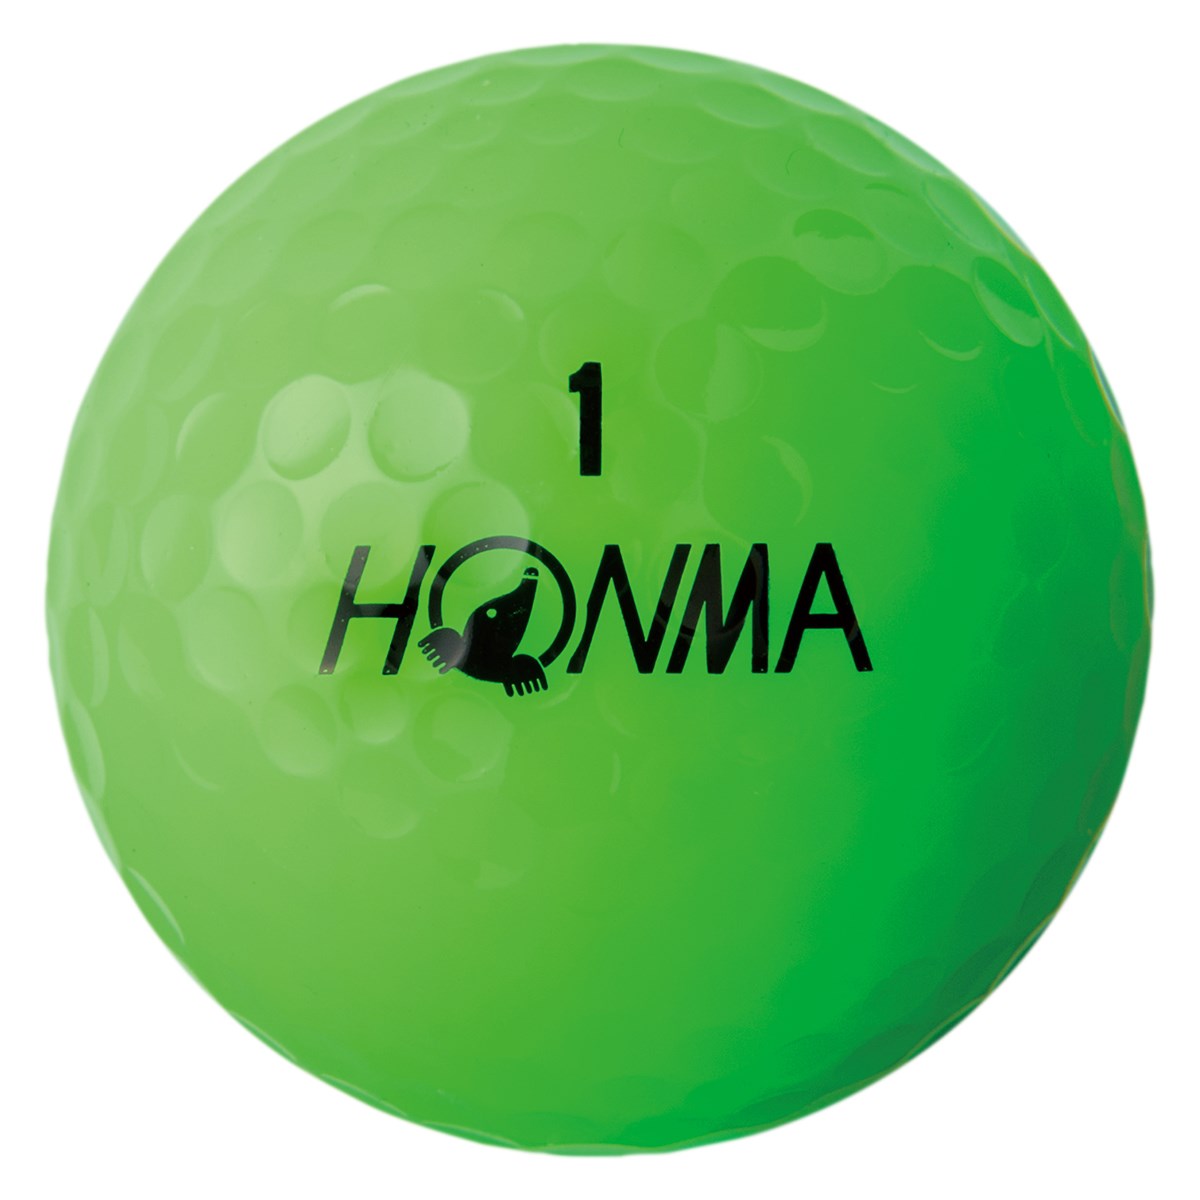 D1 ボール 18年モデル 本間ゴルフ Honma 通販 Gdoゴルフショップ